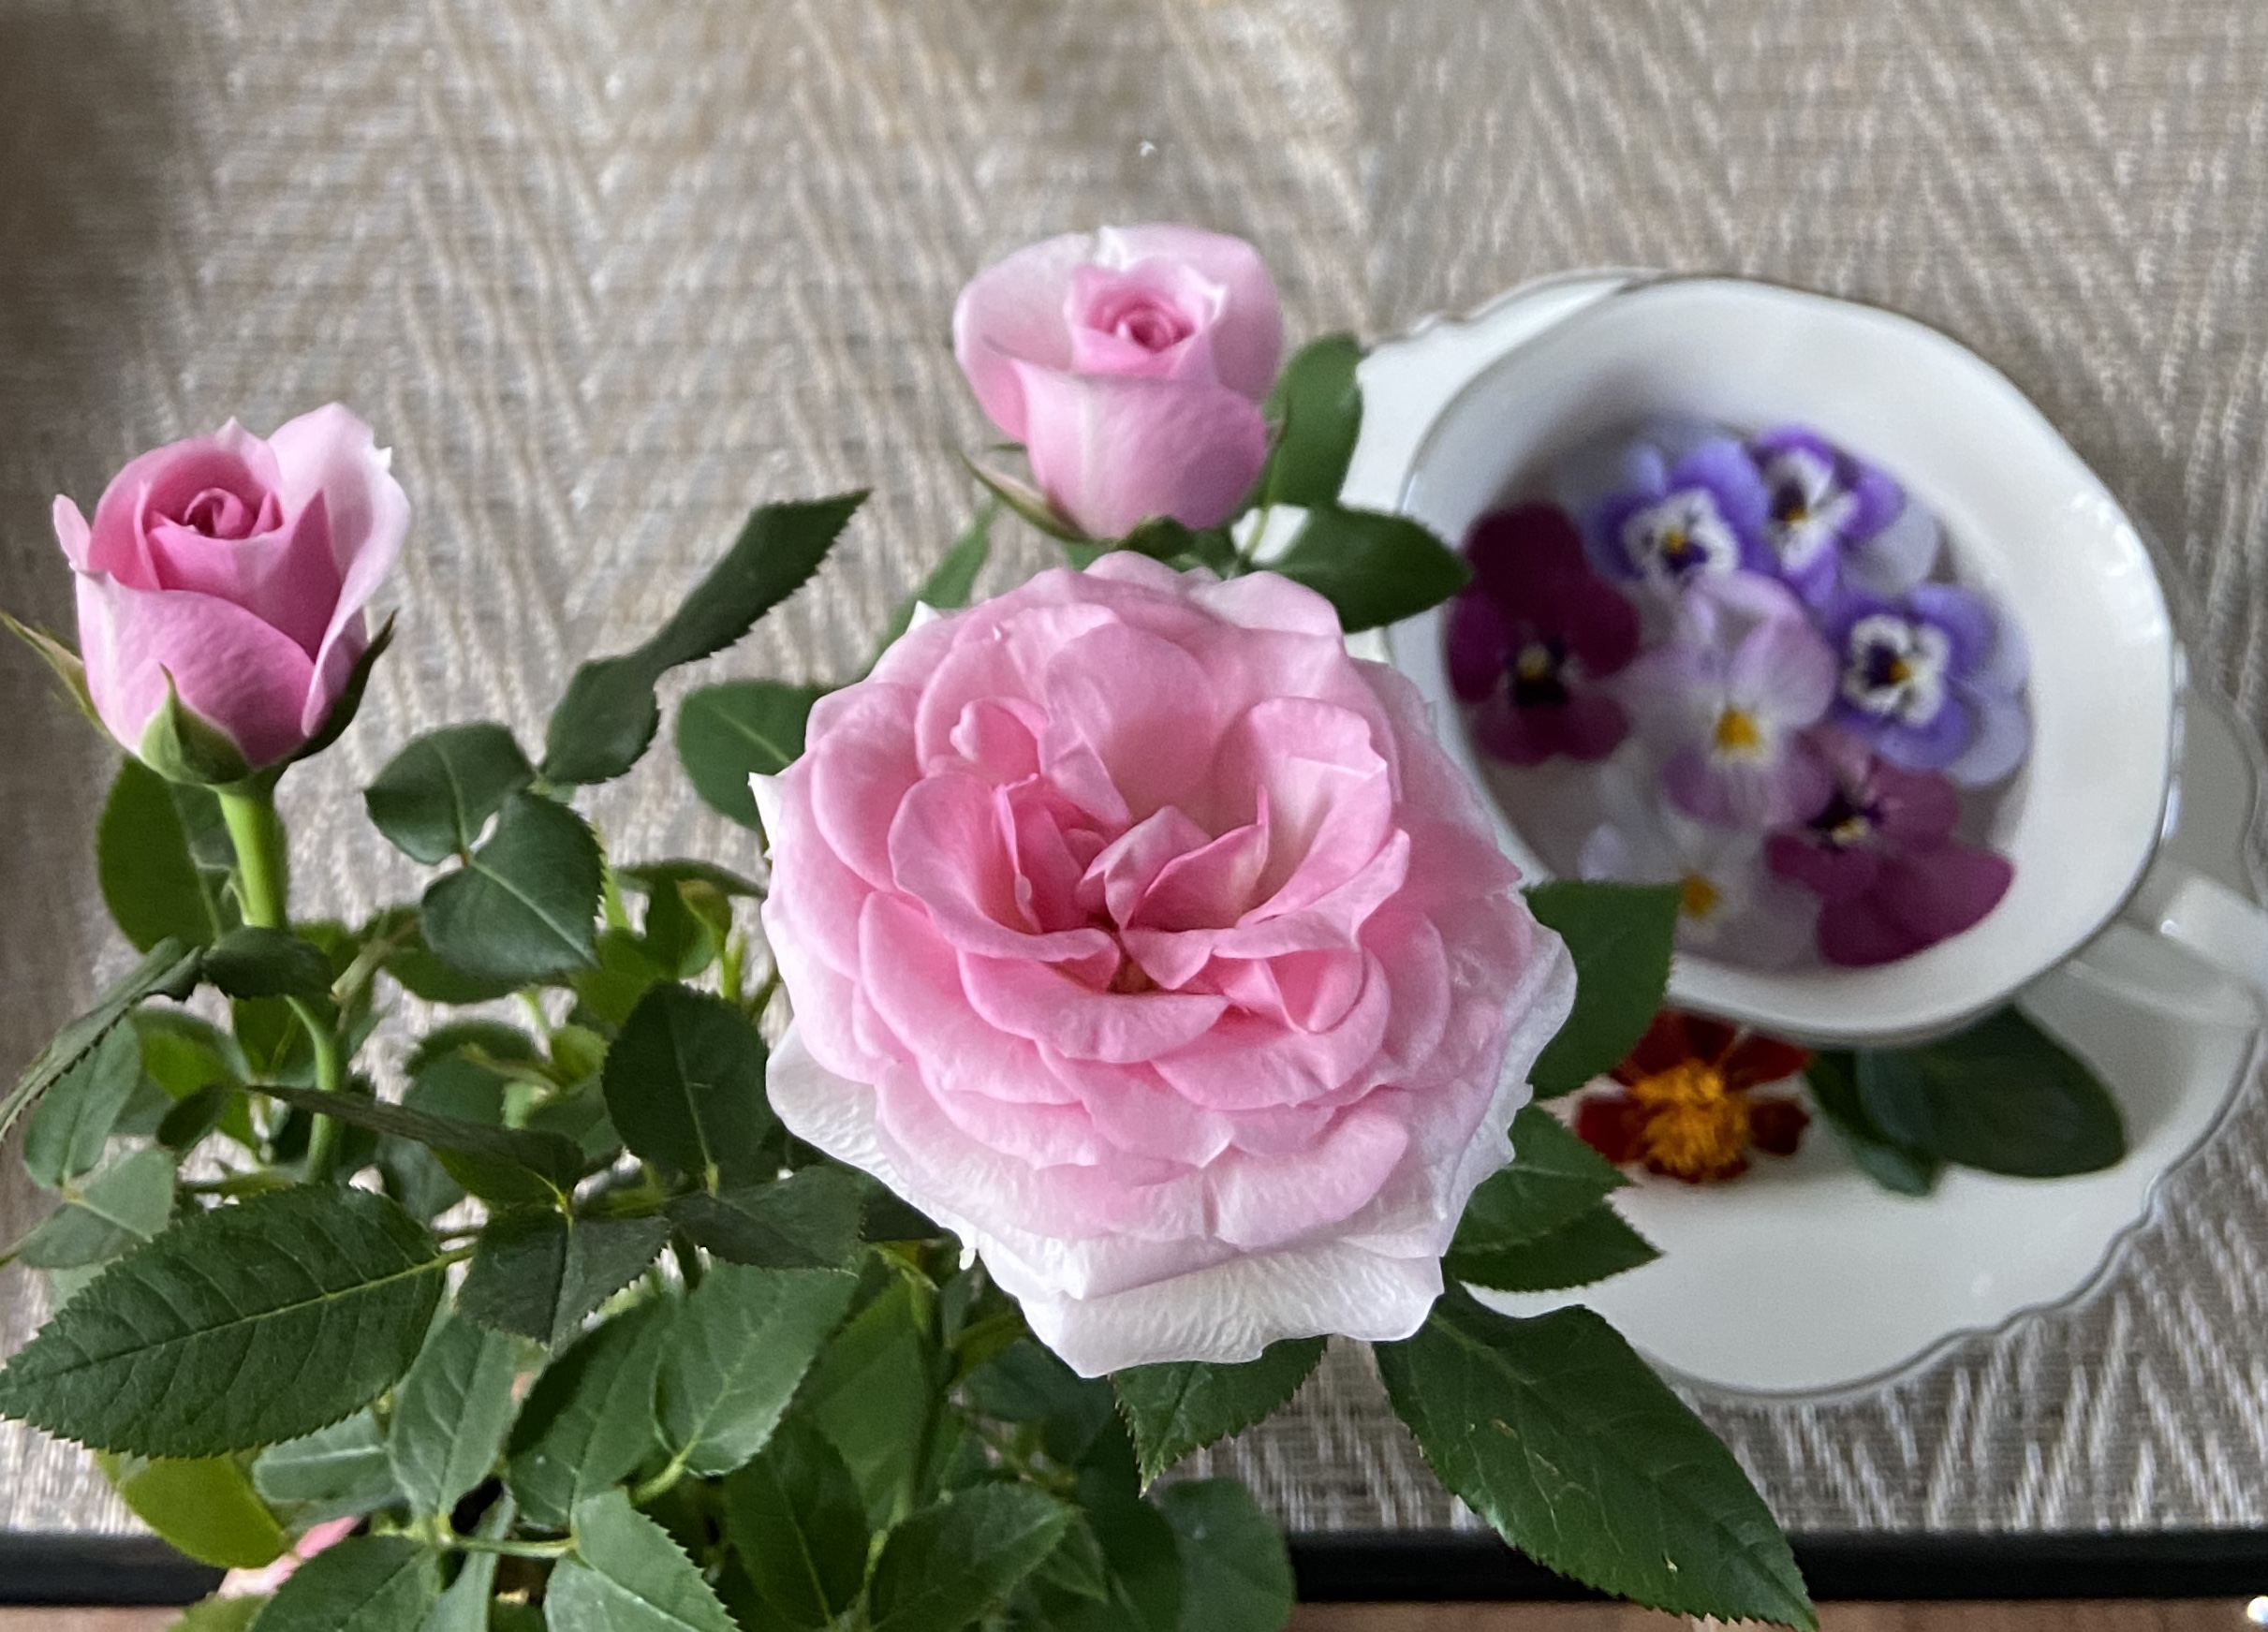 ベランダで育つバラ選びのポイント5つ 厳しい環境でも咲くバラの条件 アミローズのベランダバラガーデンブログ